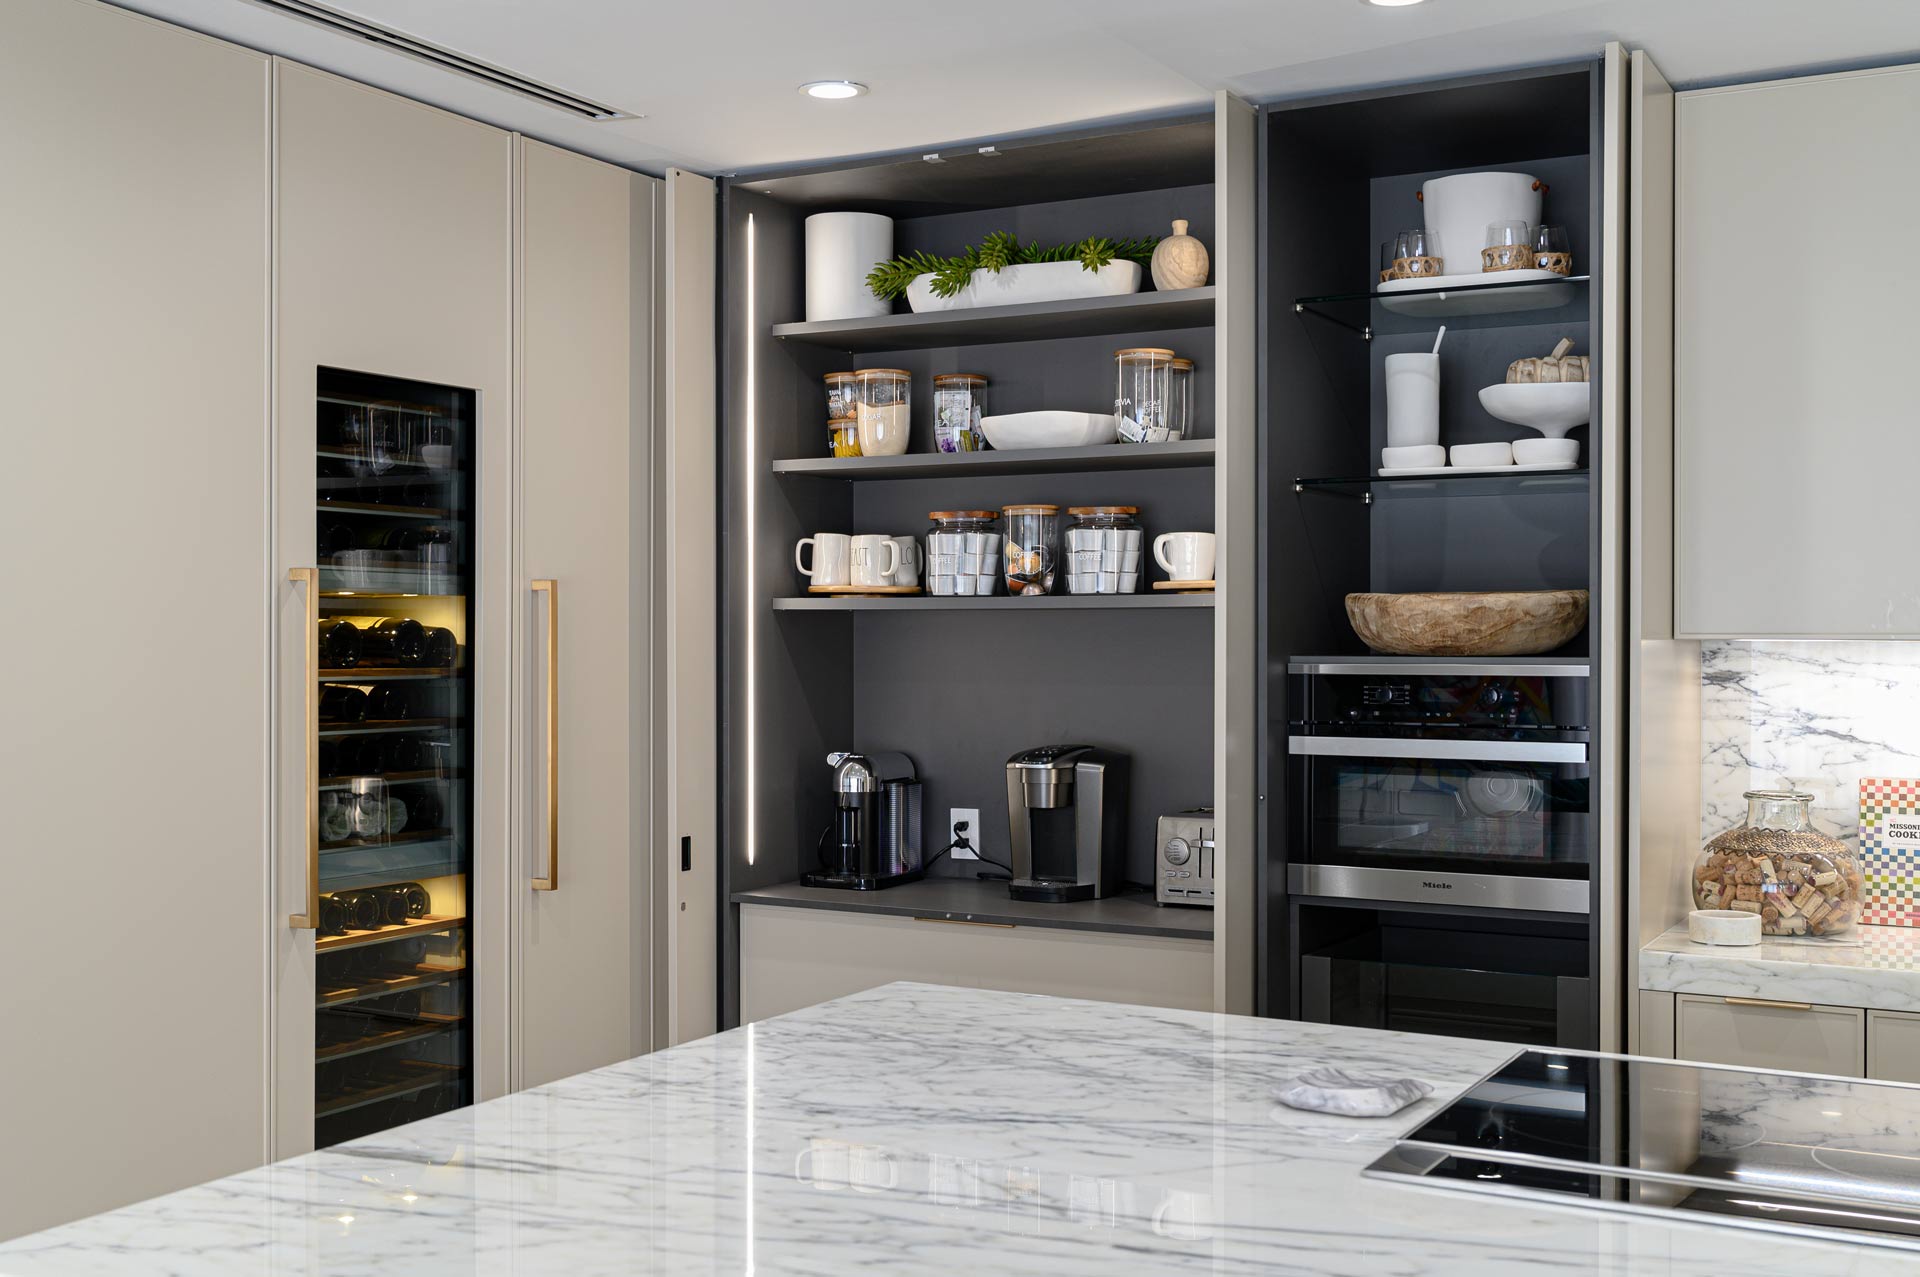 Modern luxury kitchen designs